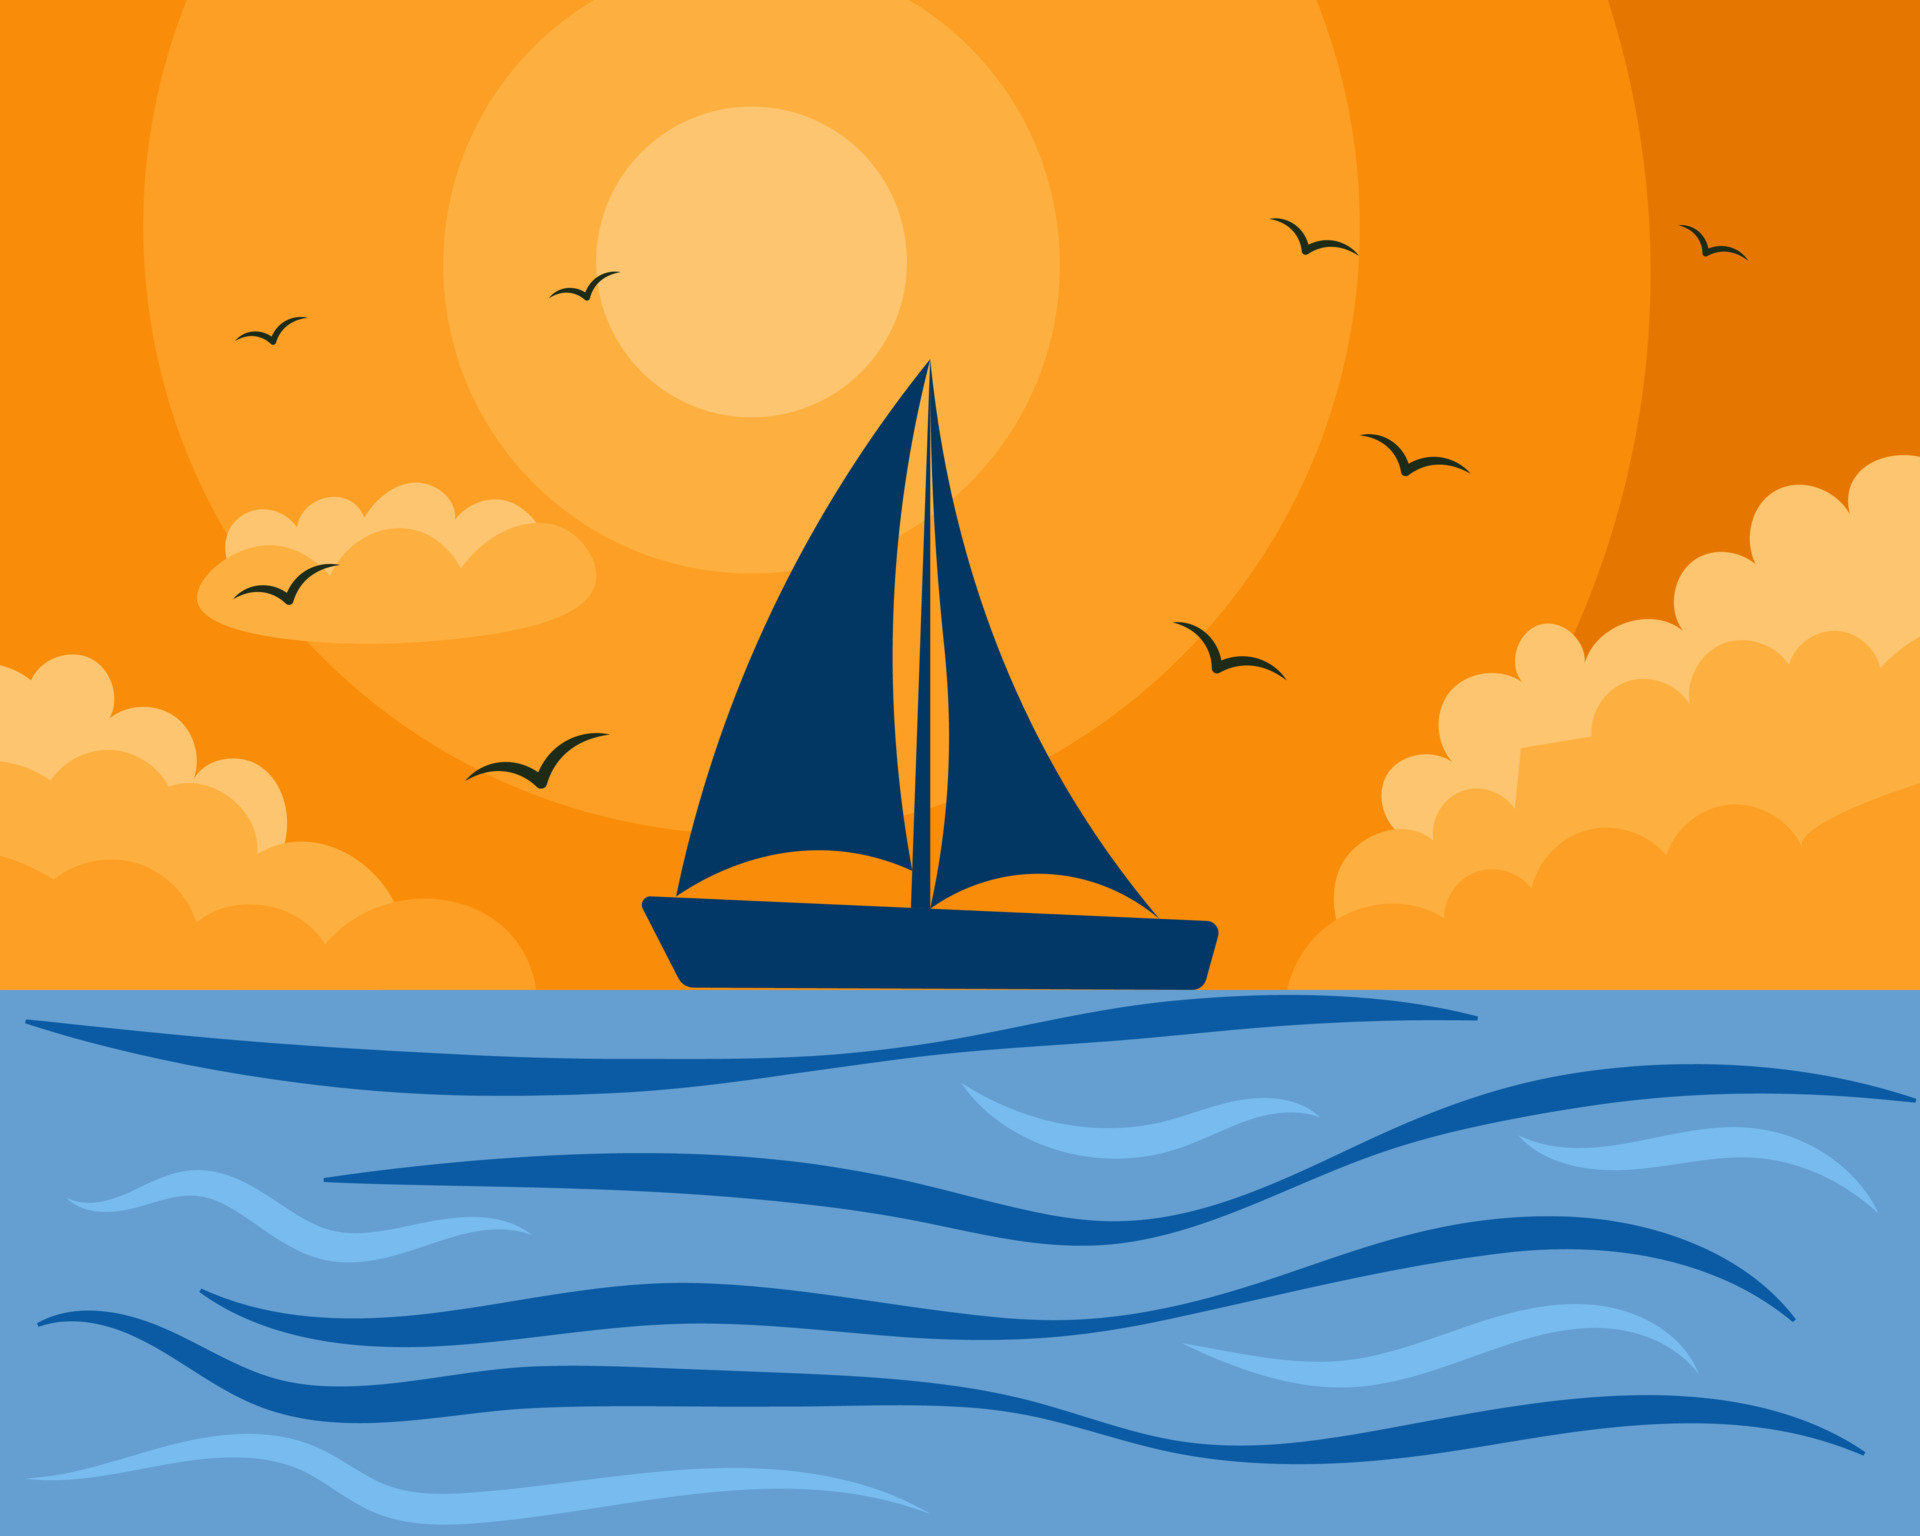 Thuyền buồm đơn độc trên biển xanh rộng lớn là một phong cách sinh hoạt độc đáo và hoàn hảo cho những ai muốn tìm lại bình yên trong cuộc sống. Bức ảnh này sẽ khiến bạn ngỡ ngàng và thích thú khi ngắm nhìn khung cảnh tuyệt đẹp ấy.